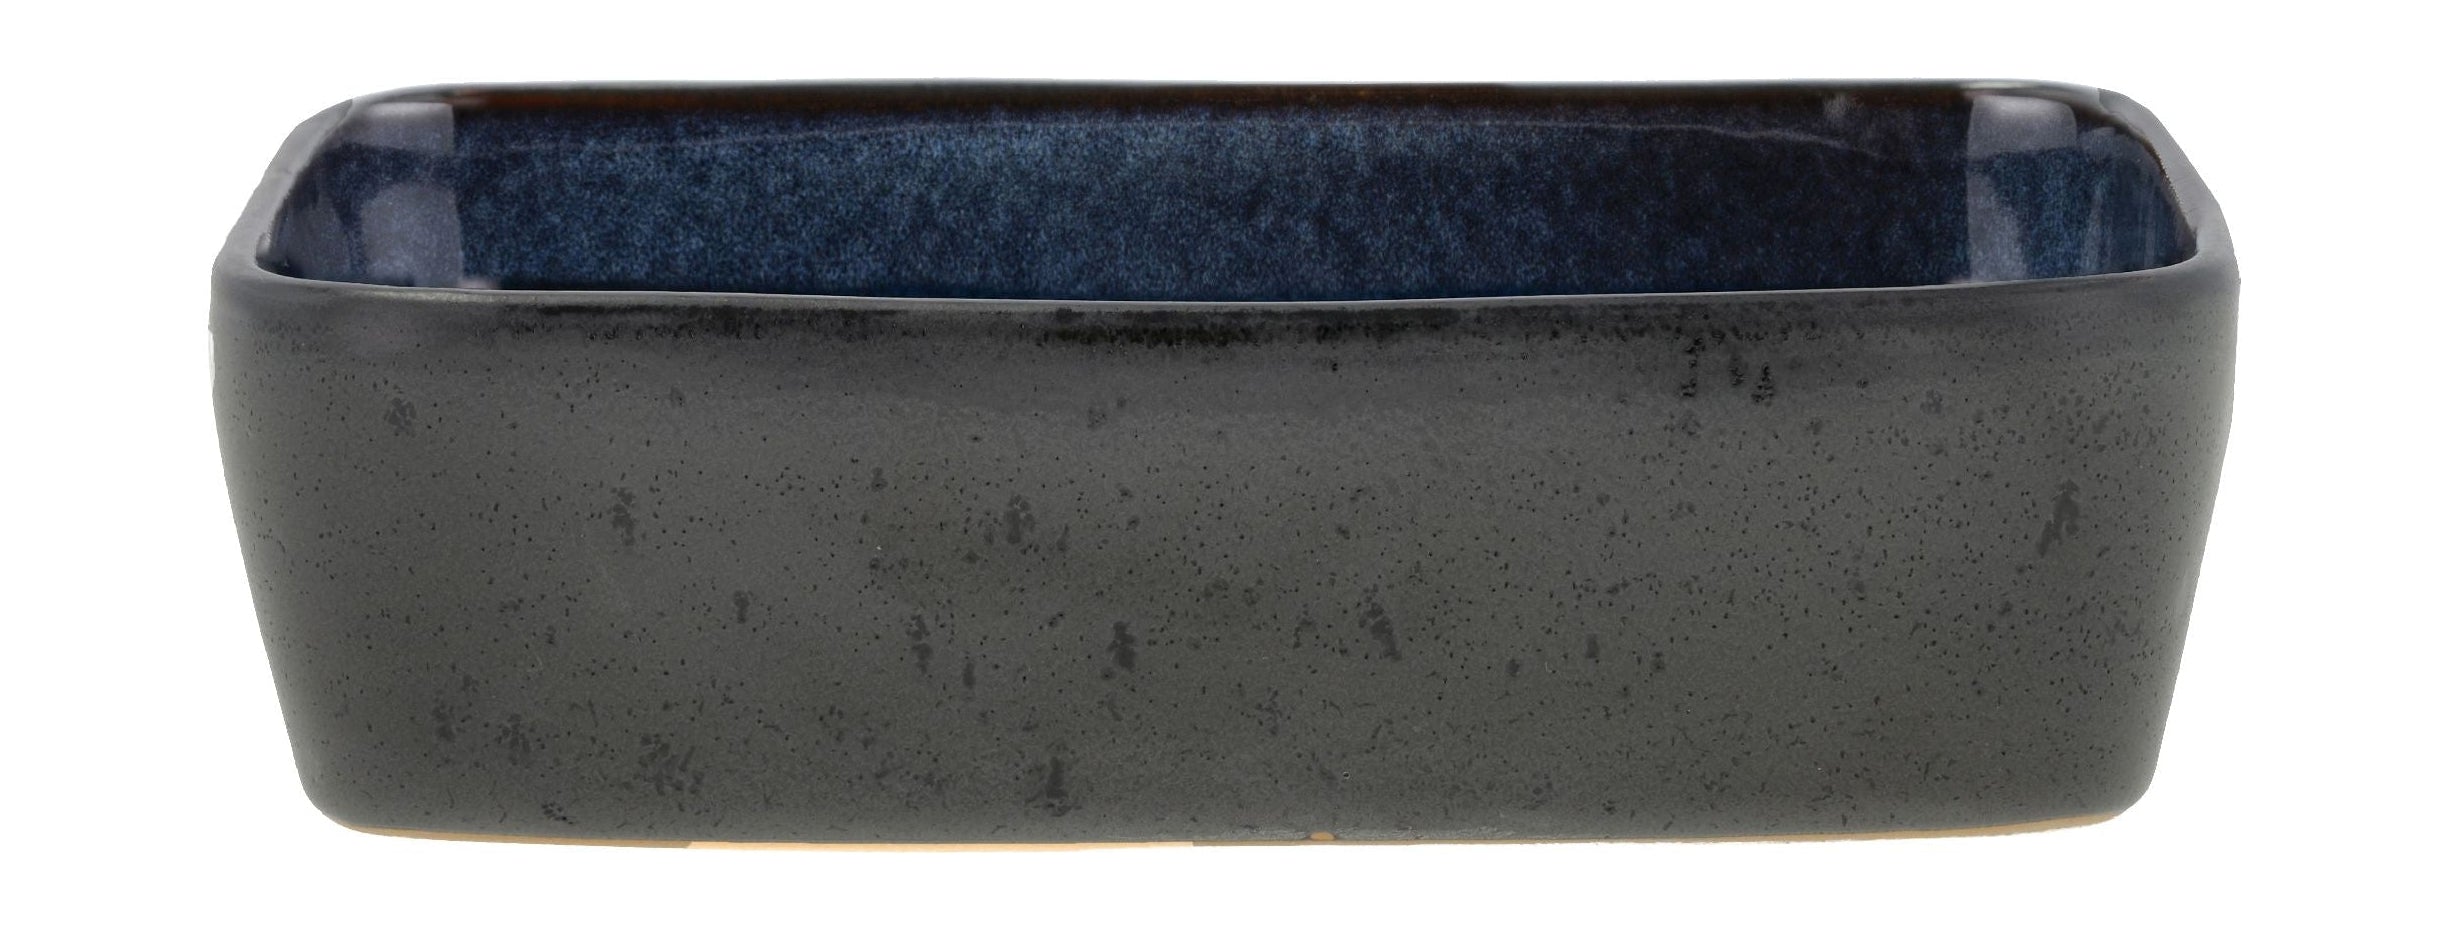 Bitz Schale rechteckig 19 x 14 x 5,3 cm, schwarz/blau